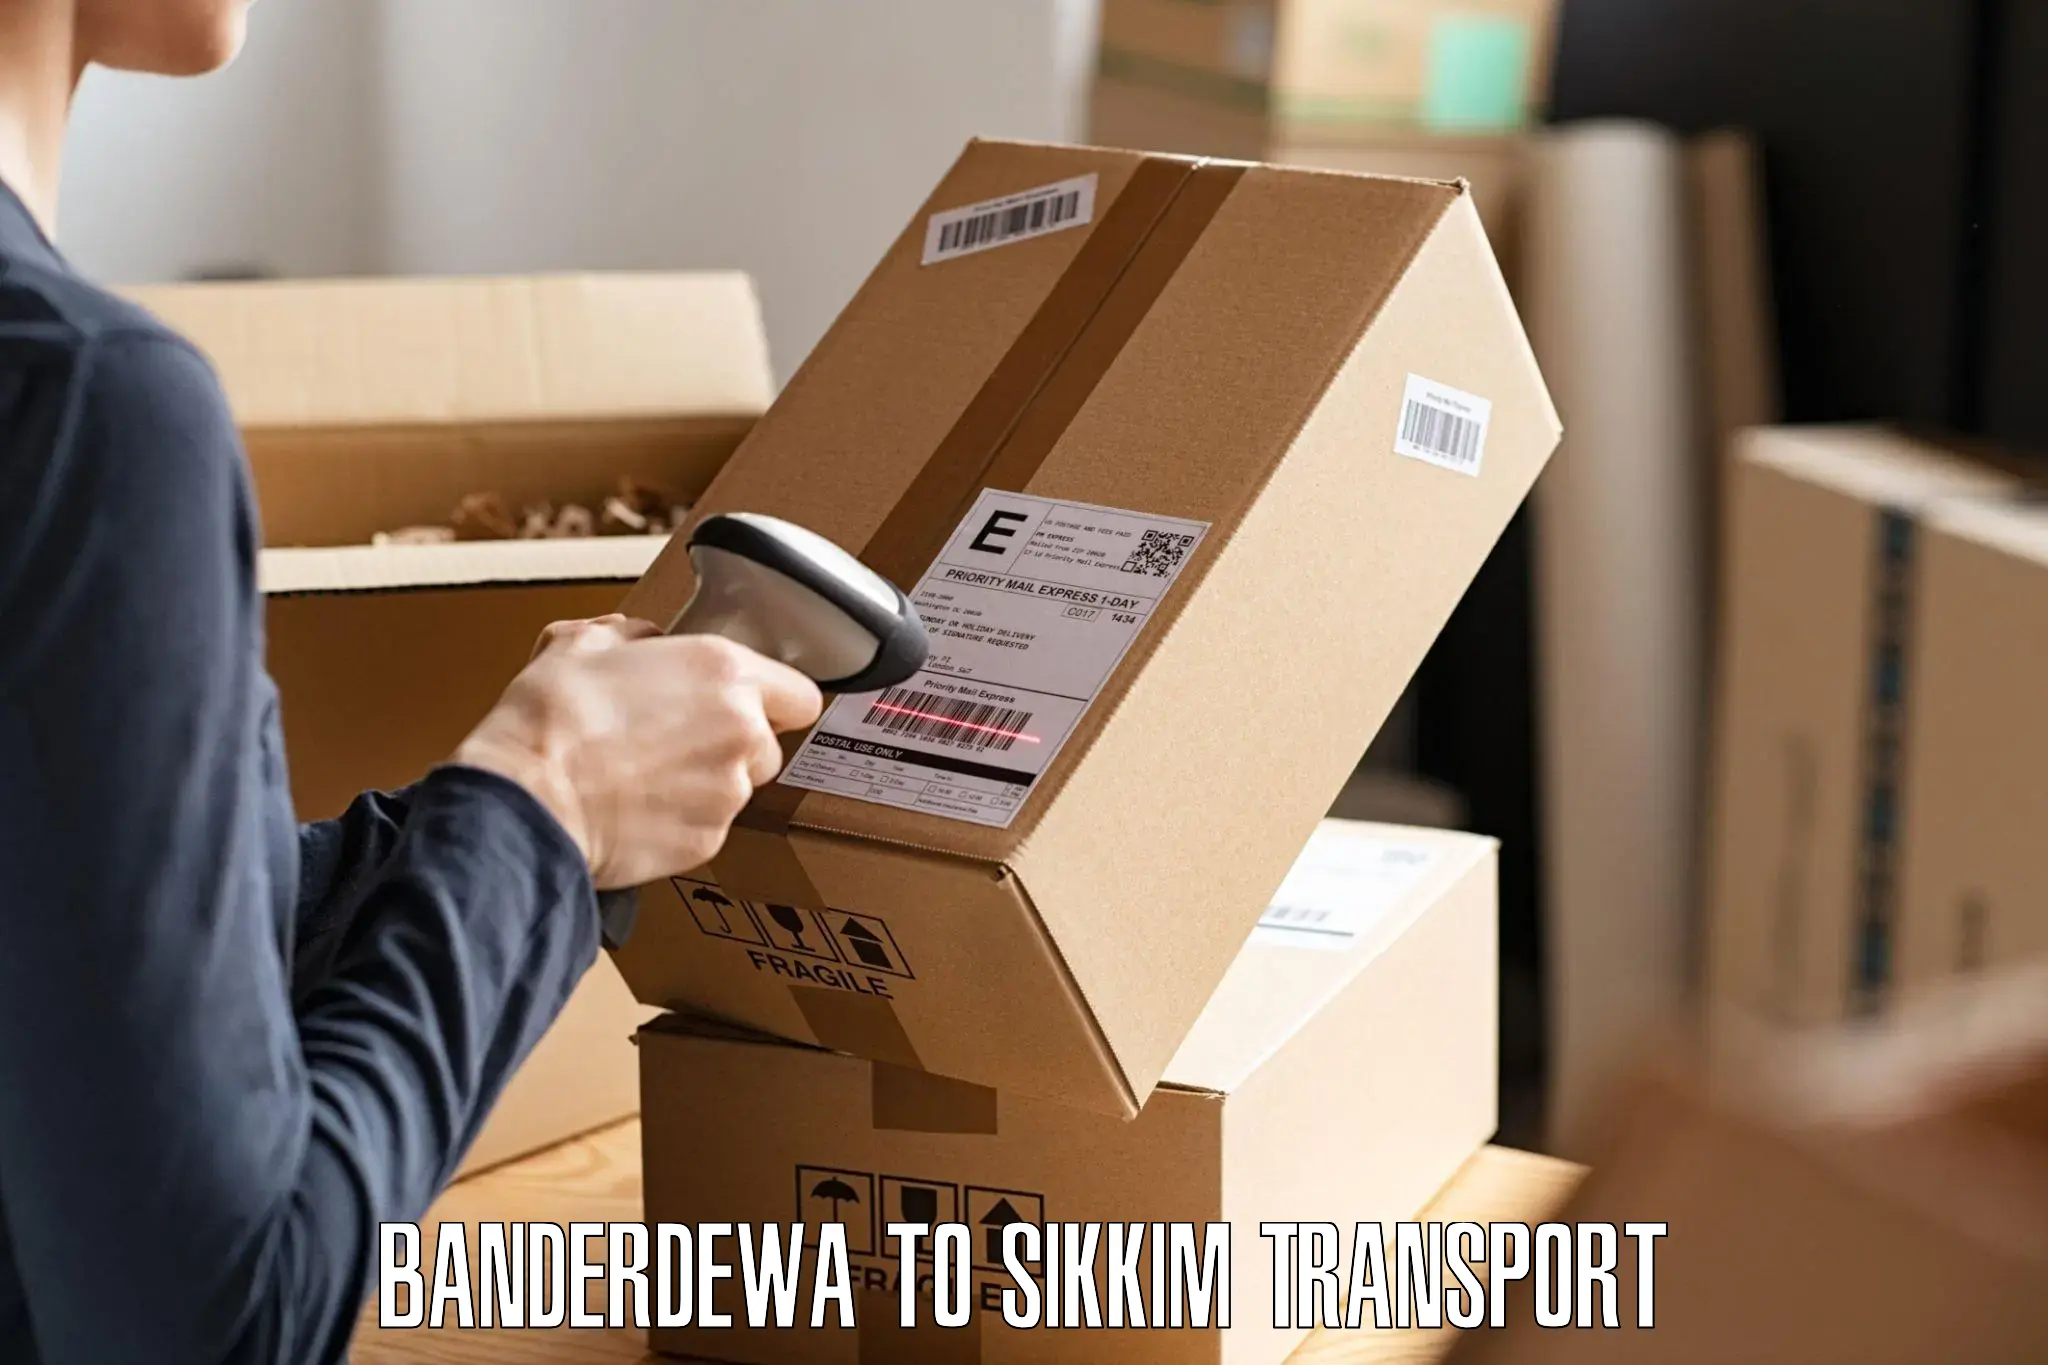 Shipping partner Banderdewa to Rangpo